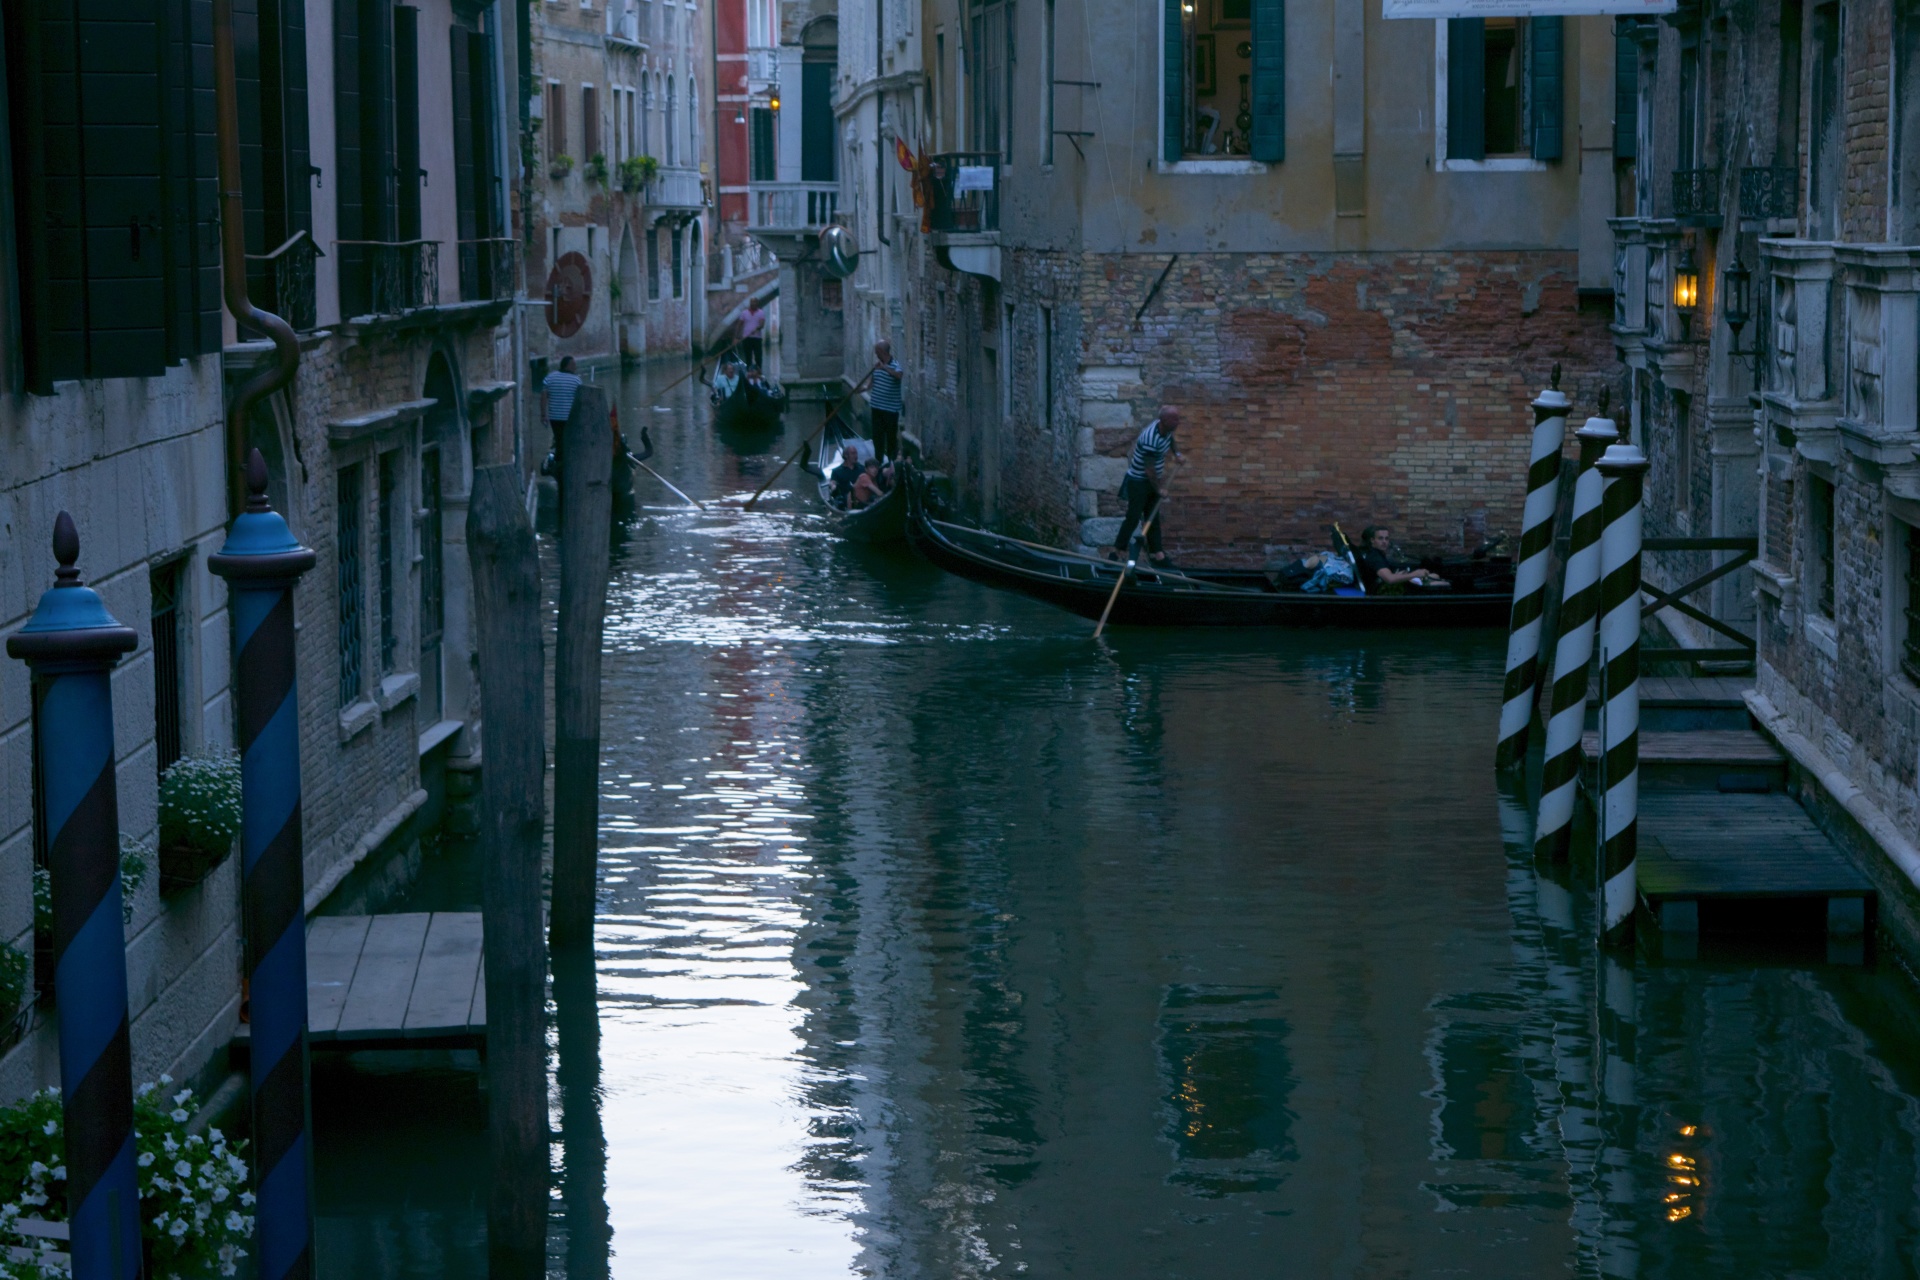 Venice Image 413